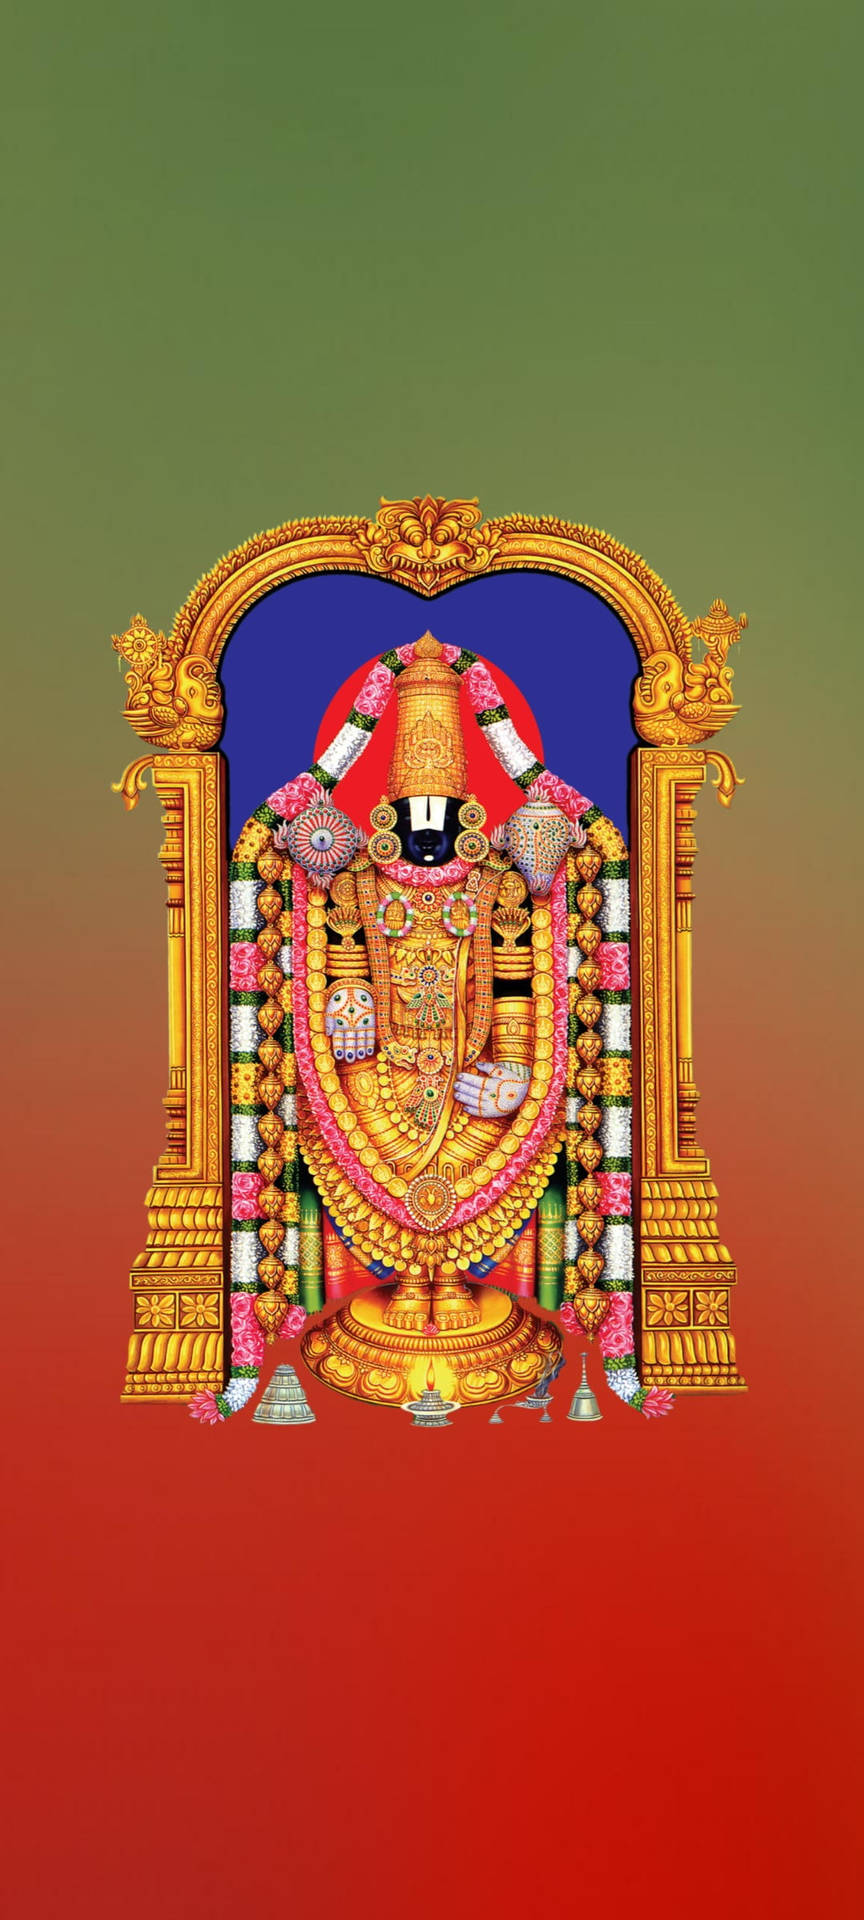 Download Tirupati Balaji Green Red Gradient Wallpaper | Wallpapers.com